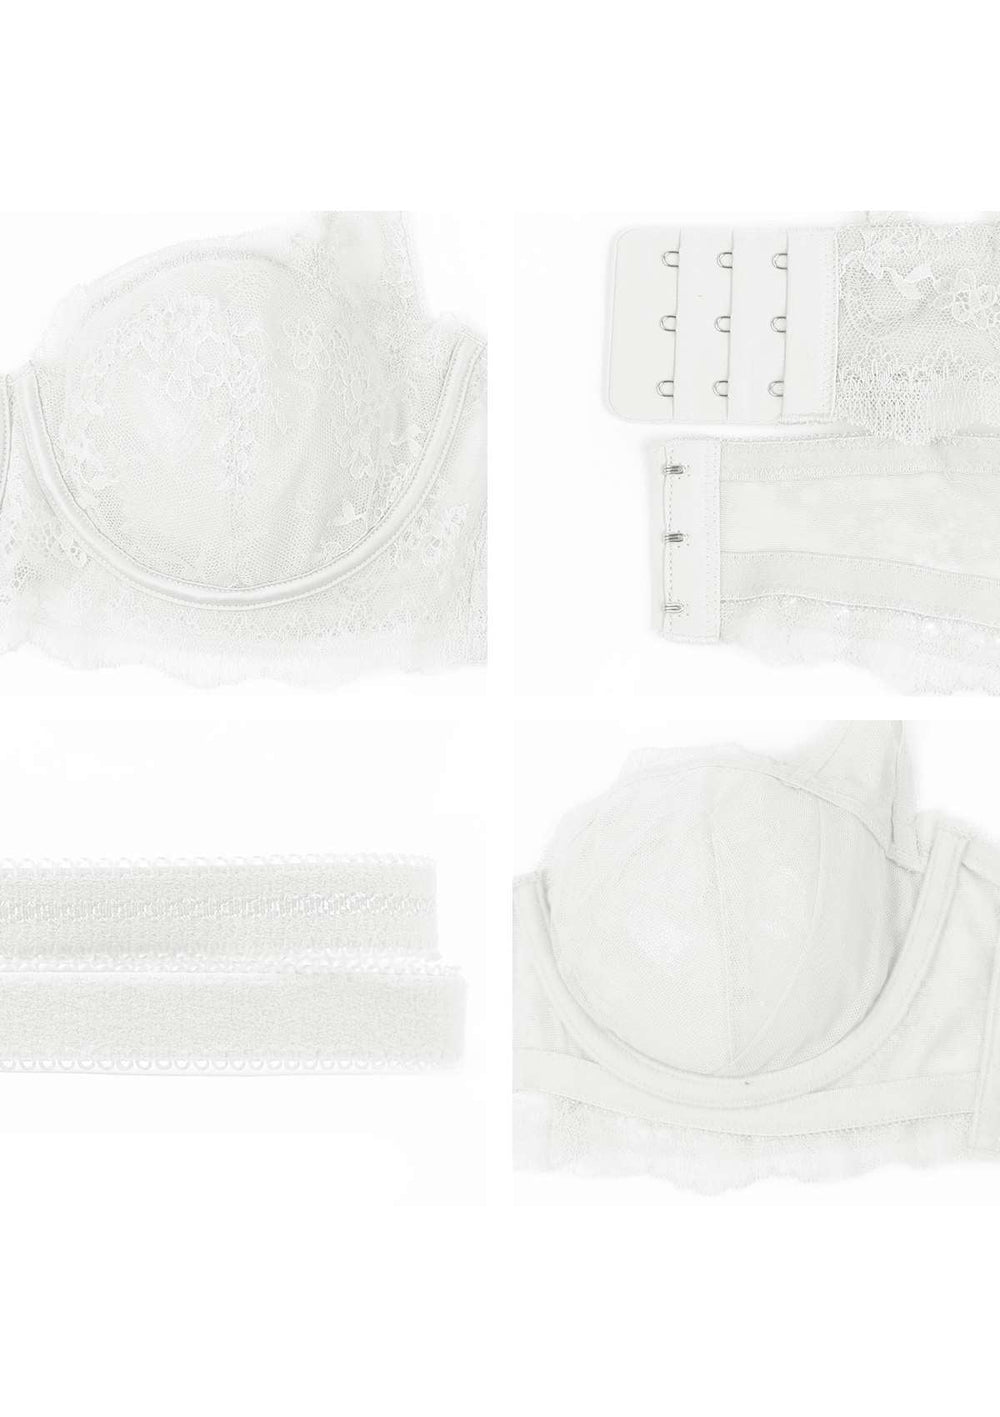 HSIA Floral Lace Unlined Bridal Romantic Balconette Bra Panty Set